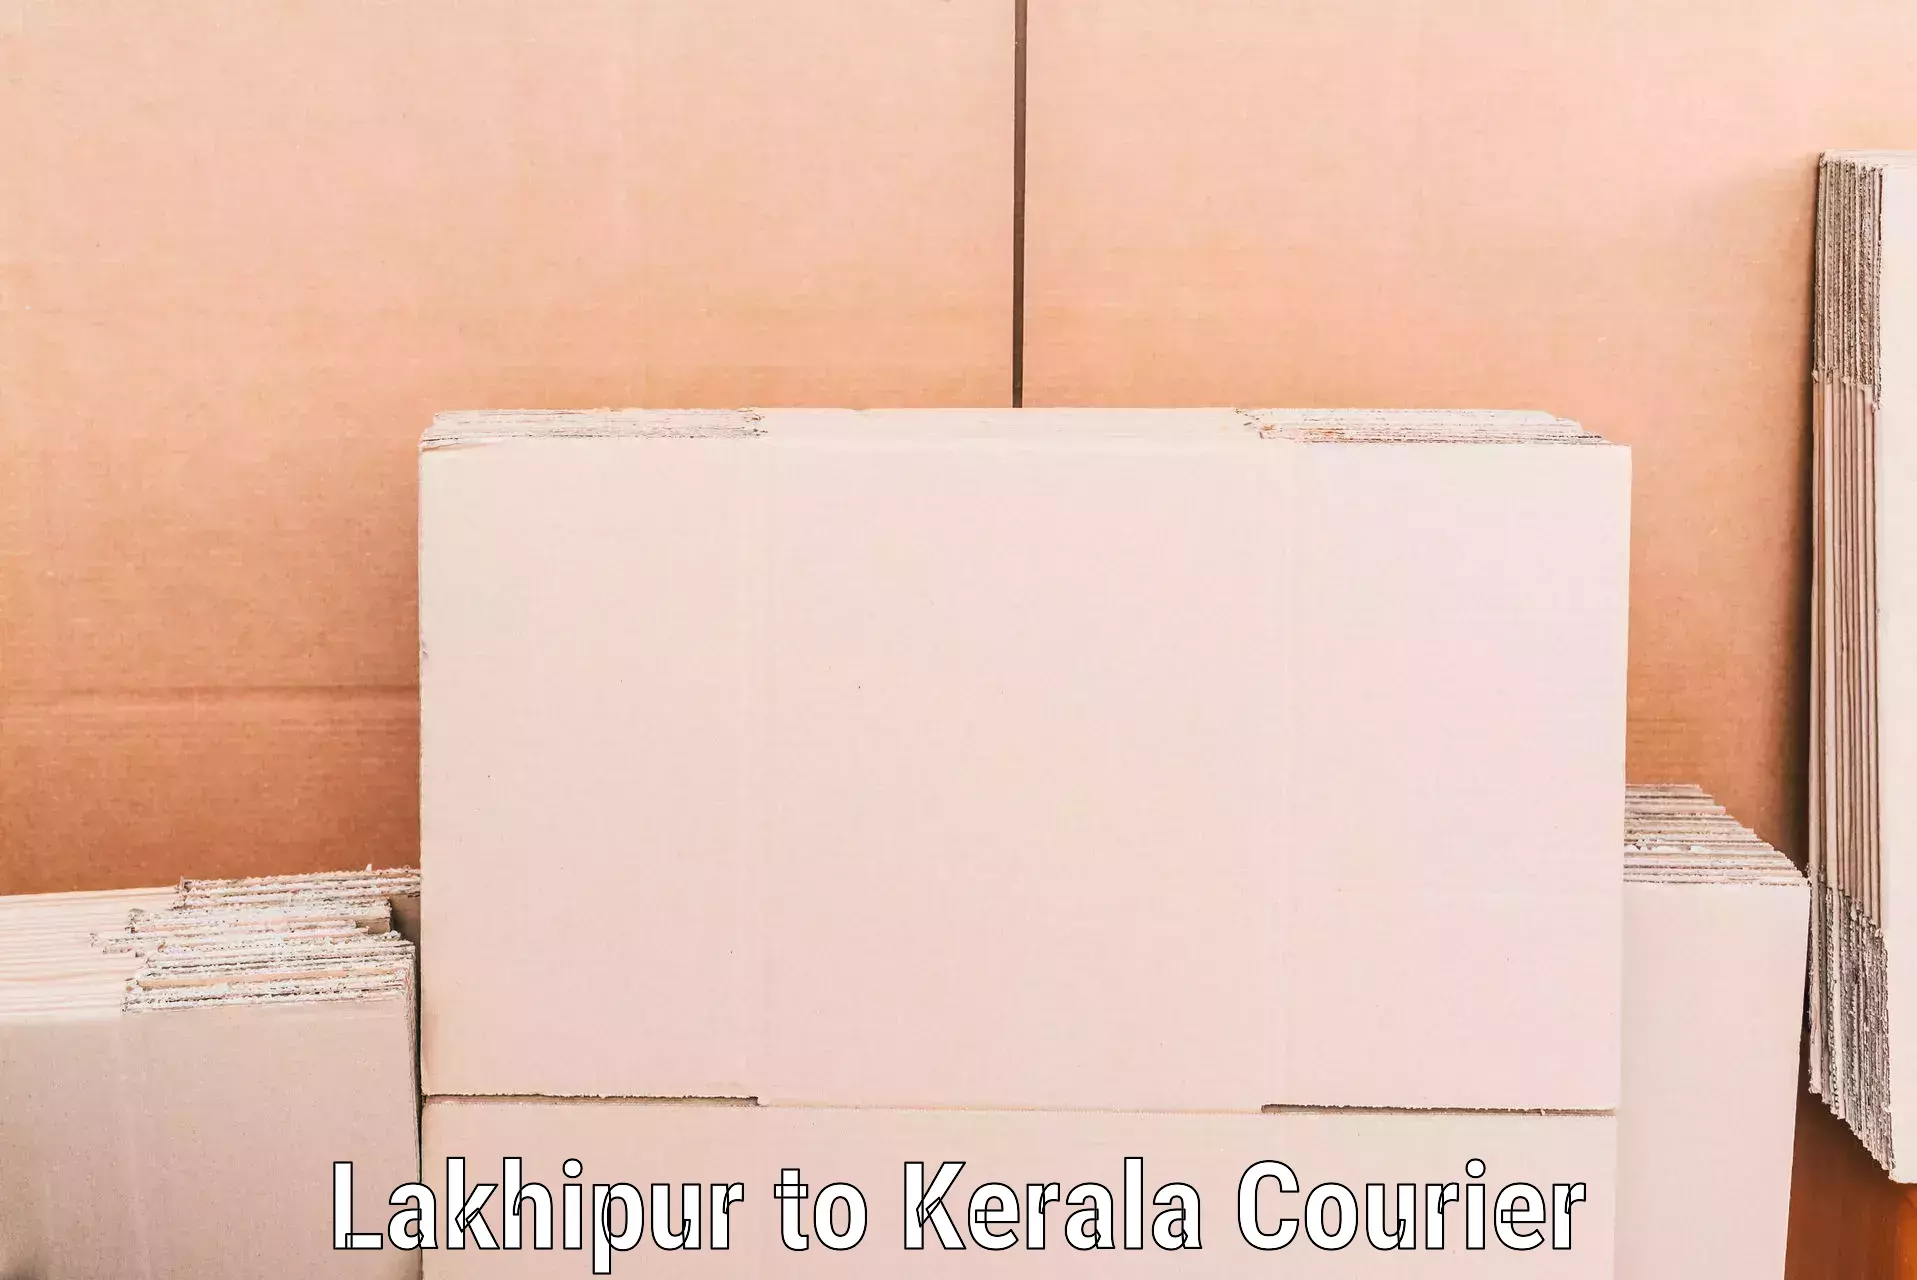 Expert moving and storage Lakhipur to Kazhakkoottam